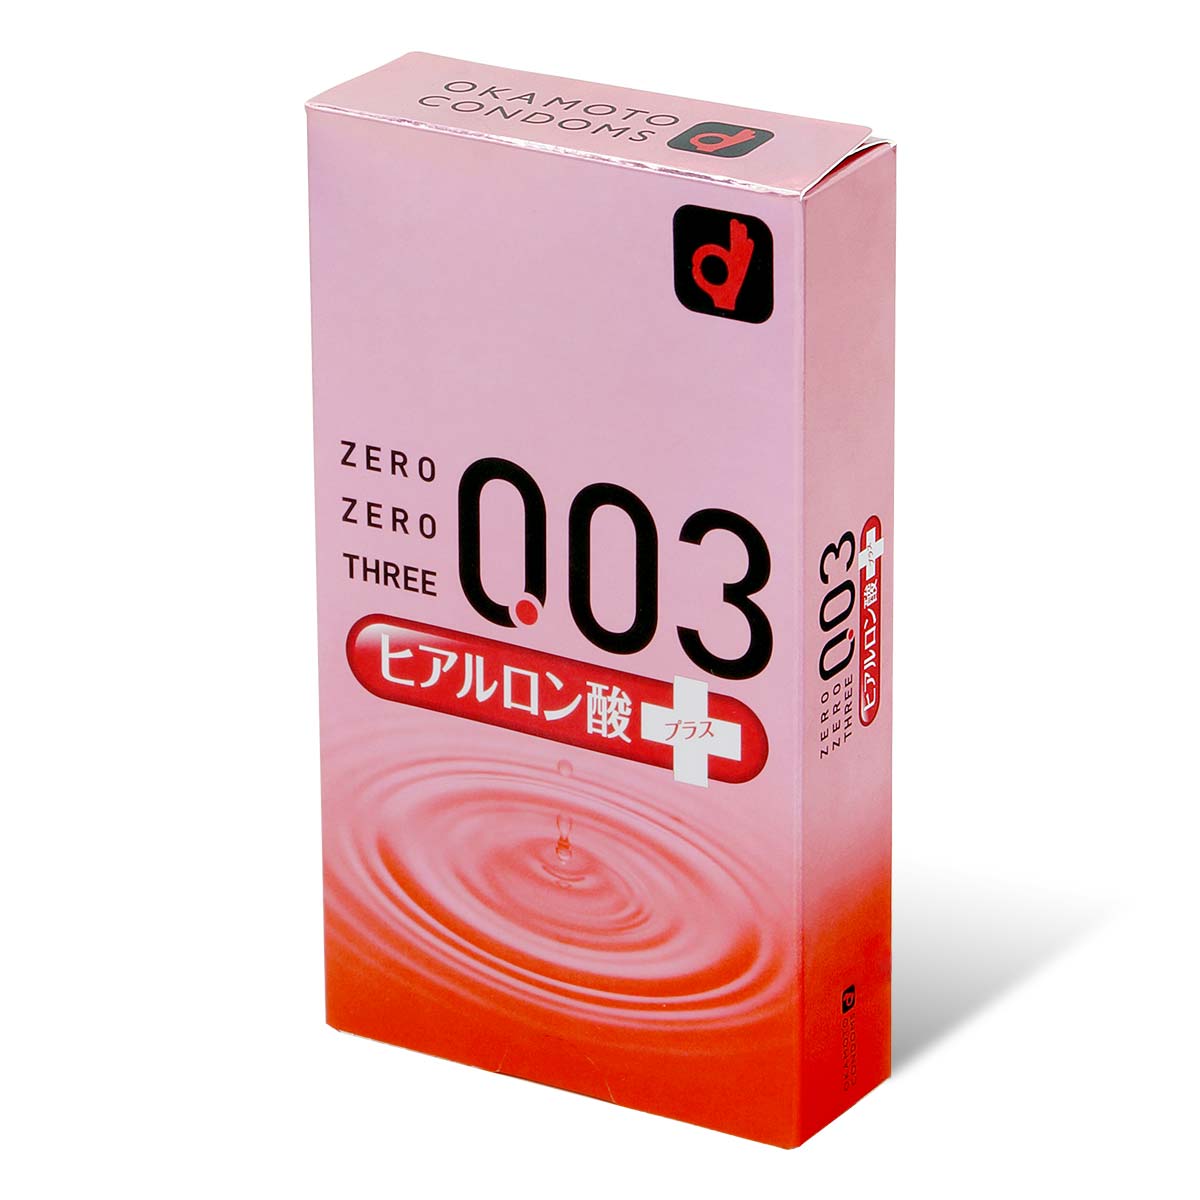 冈本。零零三 0.03 透明质酸 (日本版) 10 片装 乳胶安全套-p_1